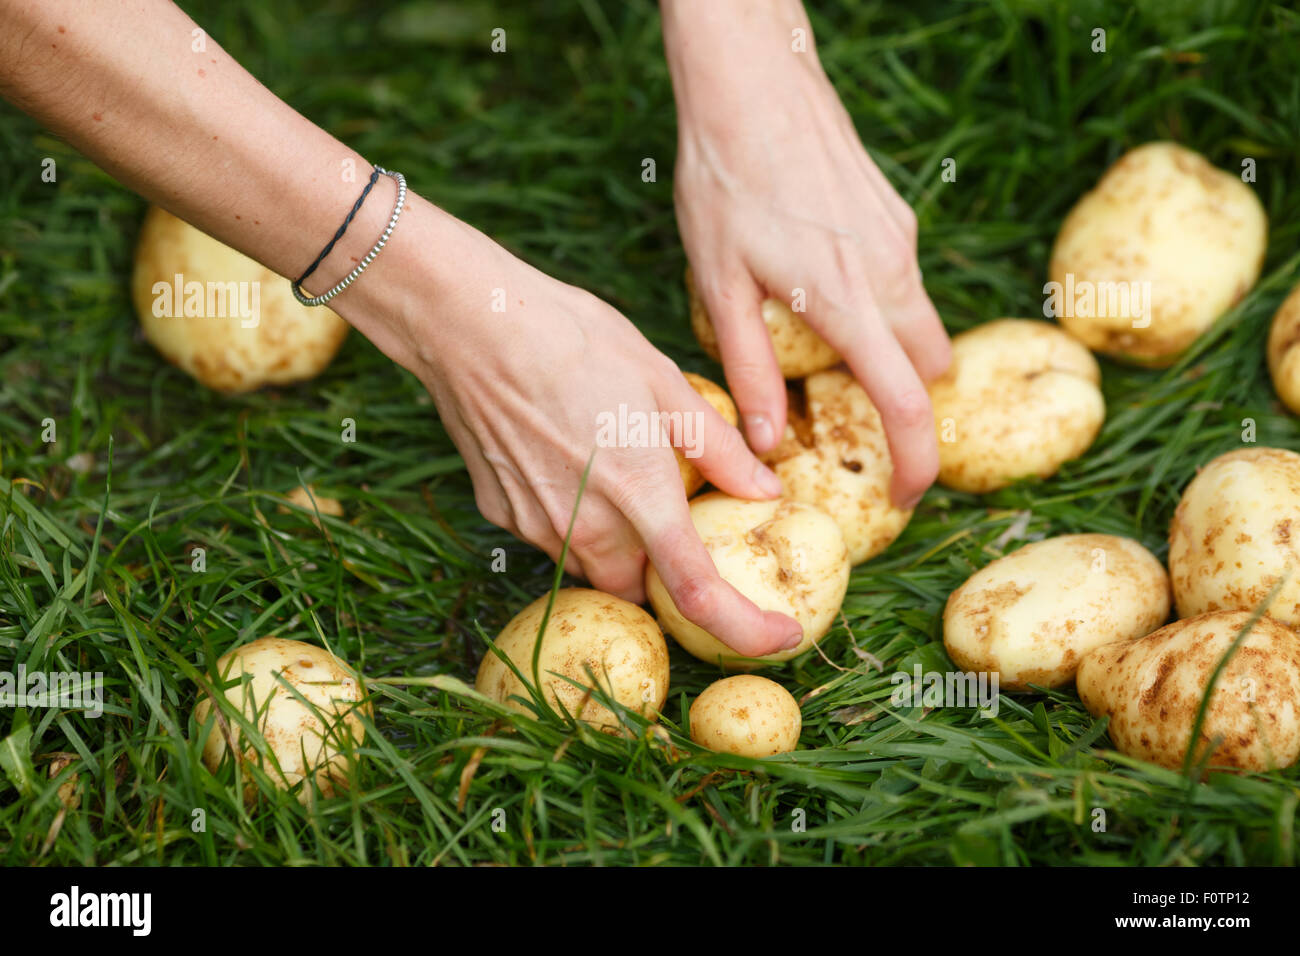 Kartoffeln zu ernten. Weibliche Hände packt gewaschen Kartoffeln aus dem Rasen. Locavore sauber Essen, ökologische Landwirtschaft, lokale Landwirtschaft, Stockfoto